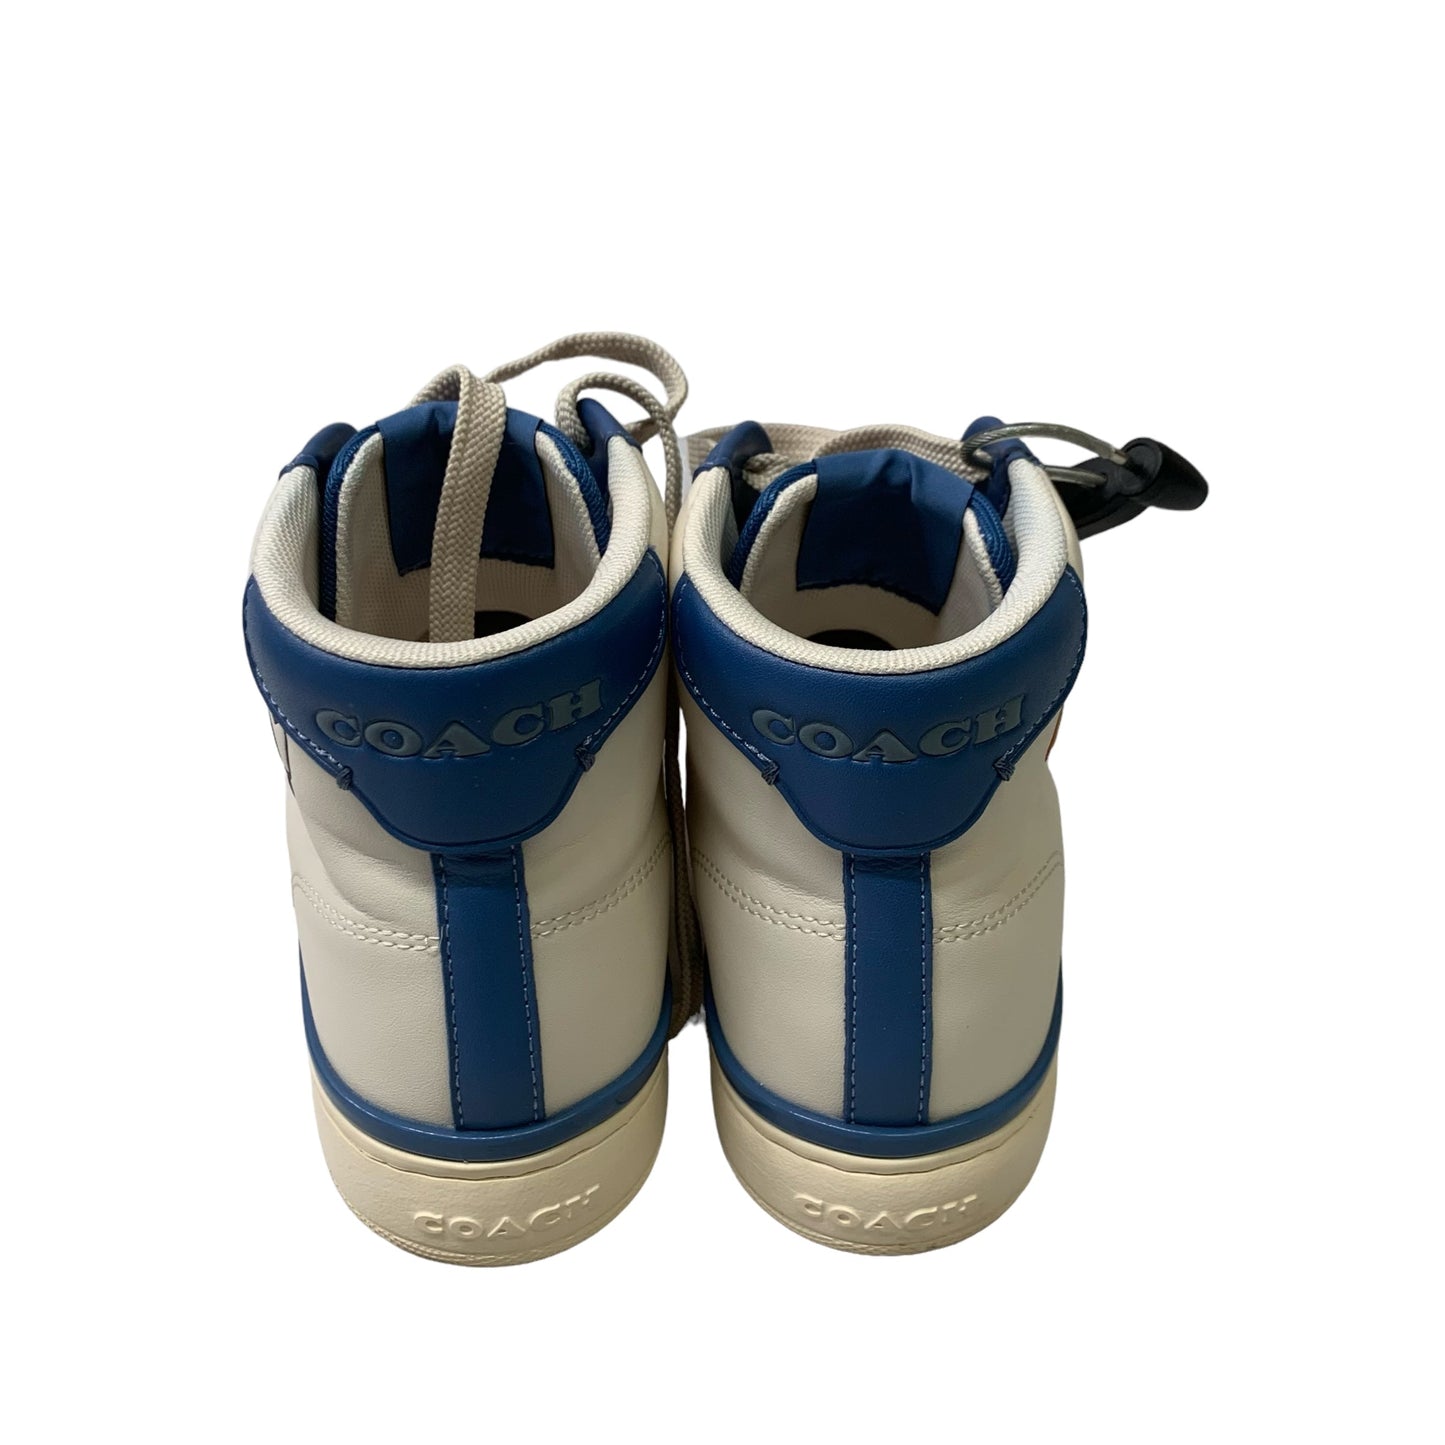 Blue & White Shoes Designer Coach, Size 7